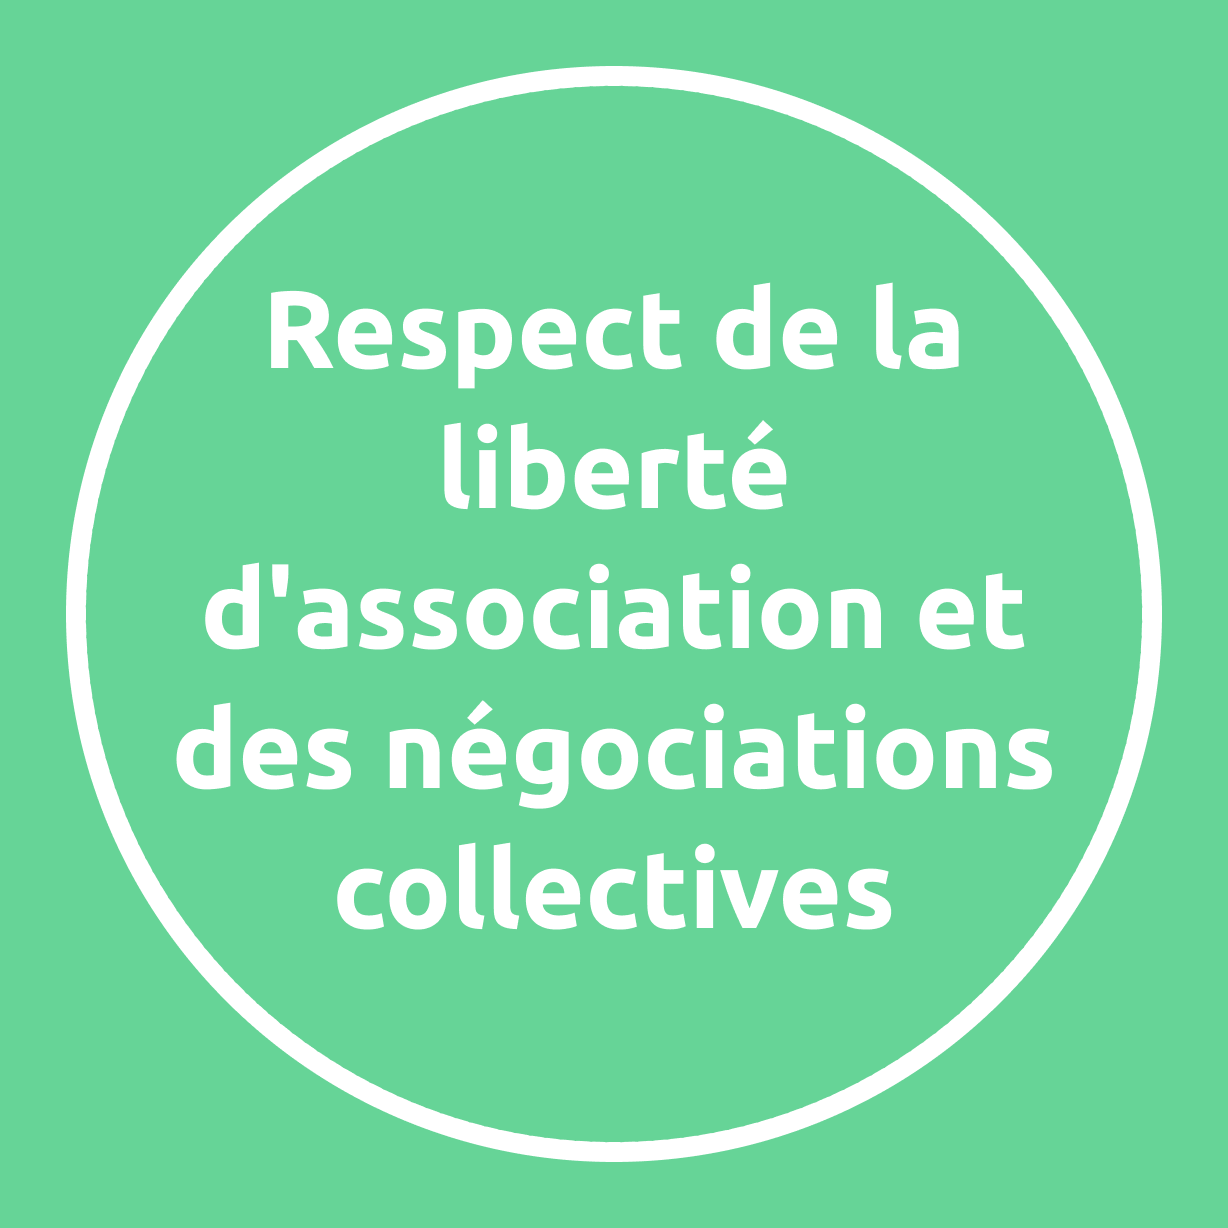 Respect de la liberté d'association et des négociations collectives